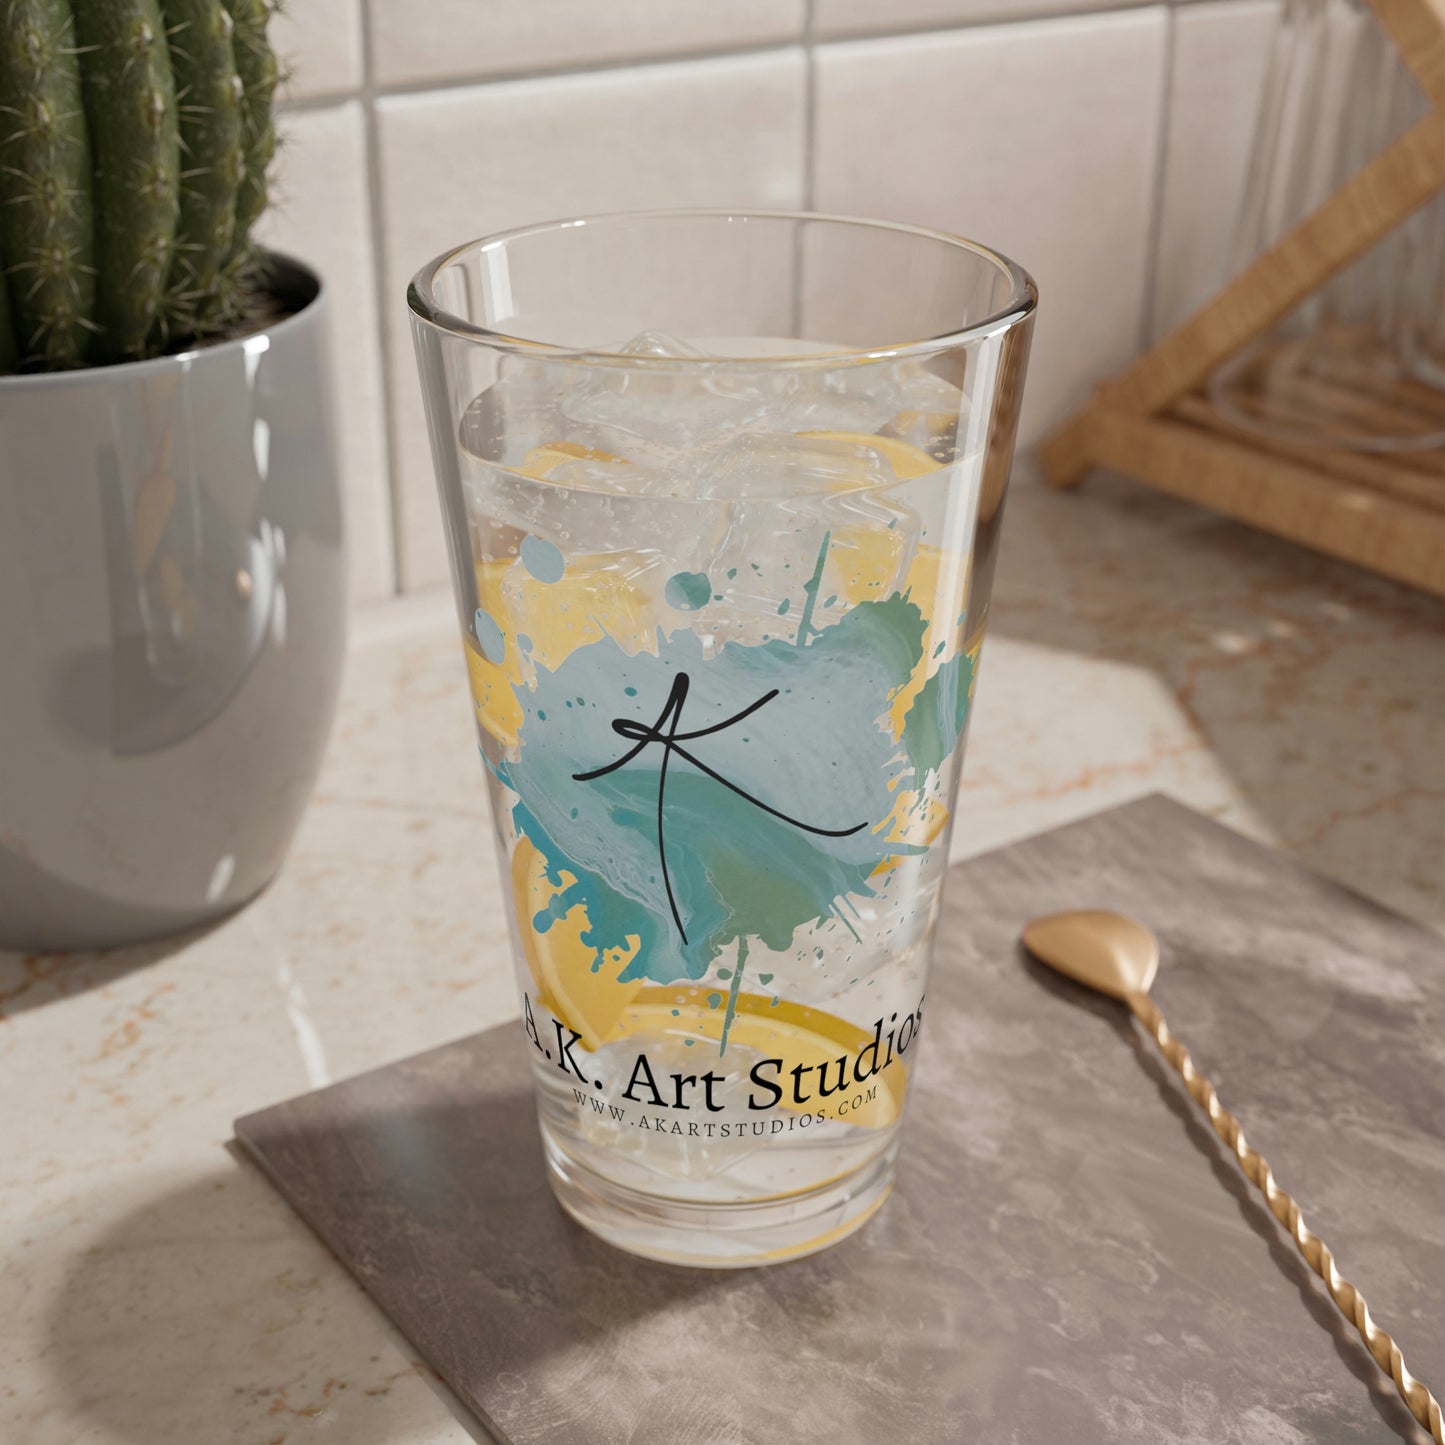 AK Art Studios Pint Glass